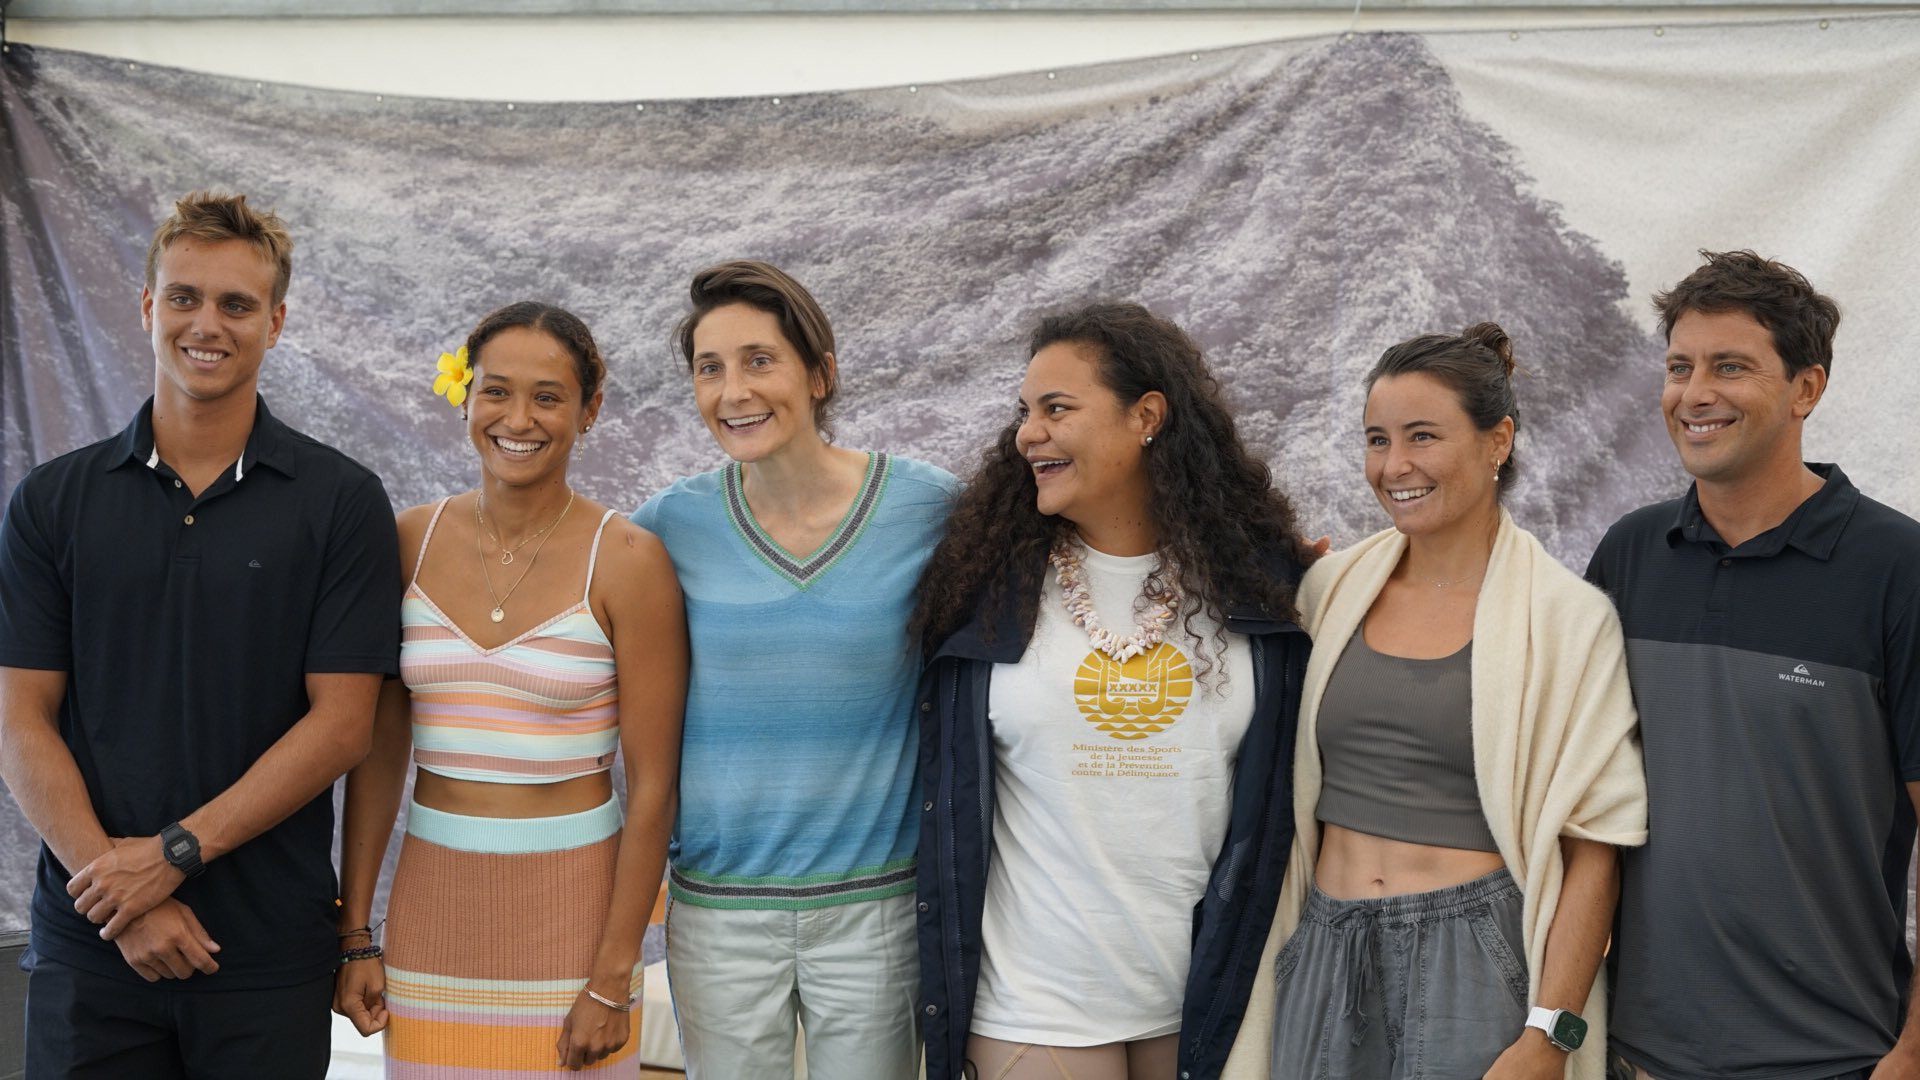 French Sports Minister Amélie Oudéa-Castéra, third from left, has hailed the Paris 2024 surfing venue in Tahiti as "magical" ©Twitter/Amélie Oudéa-Castéra